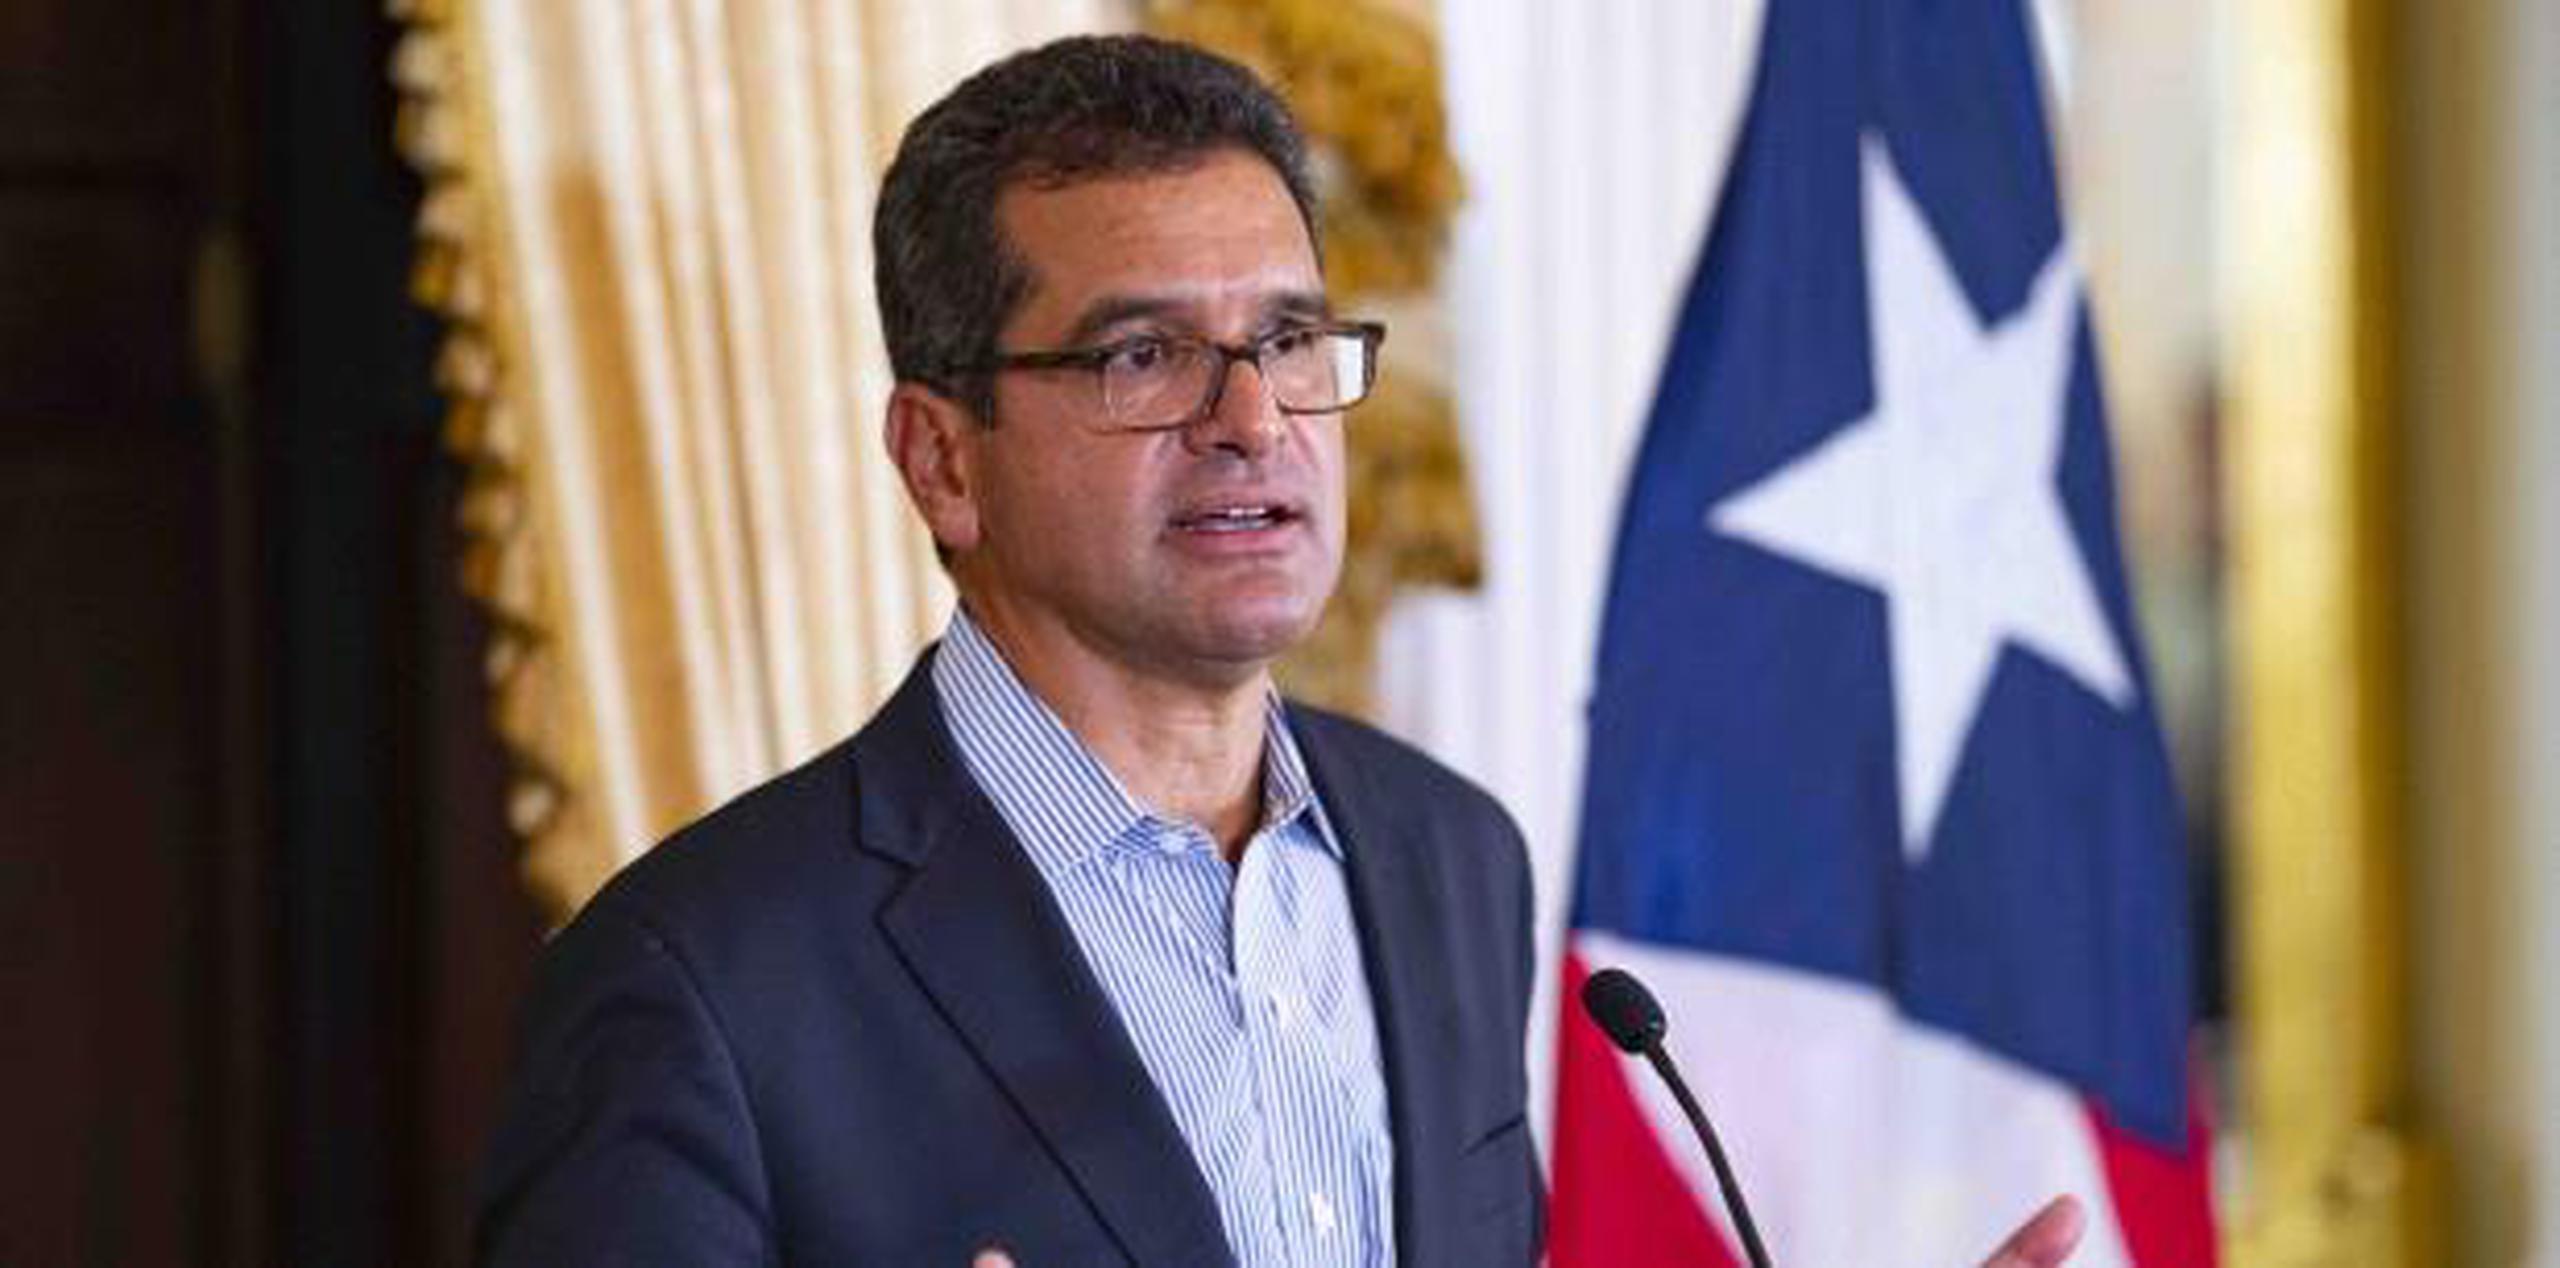 Pedro Pierluisi juramentó como gobernador de Puerto Rico el pasado 2 de agosto, luego que se hiciera efectiva la renuncia de Ricardo Rosselló.(tonito.zayas@gfrmedia.com)